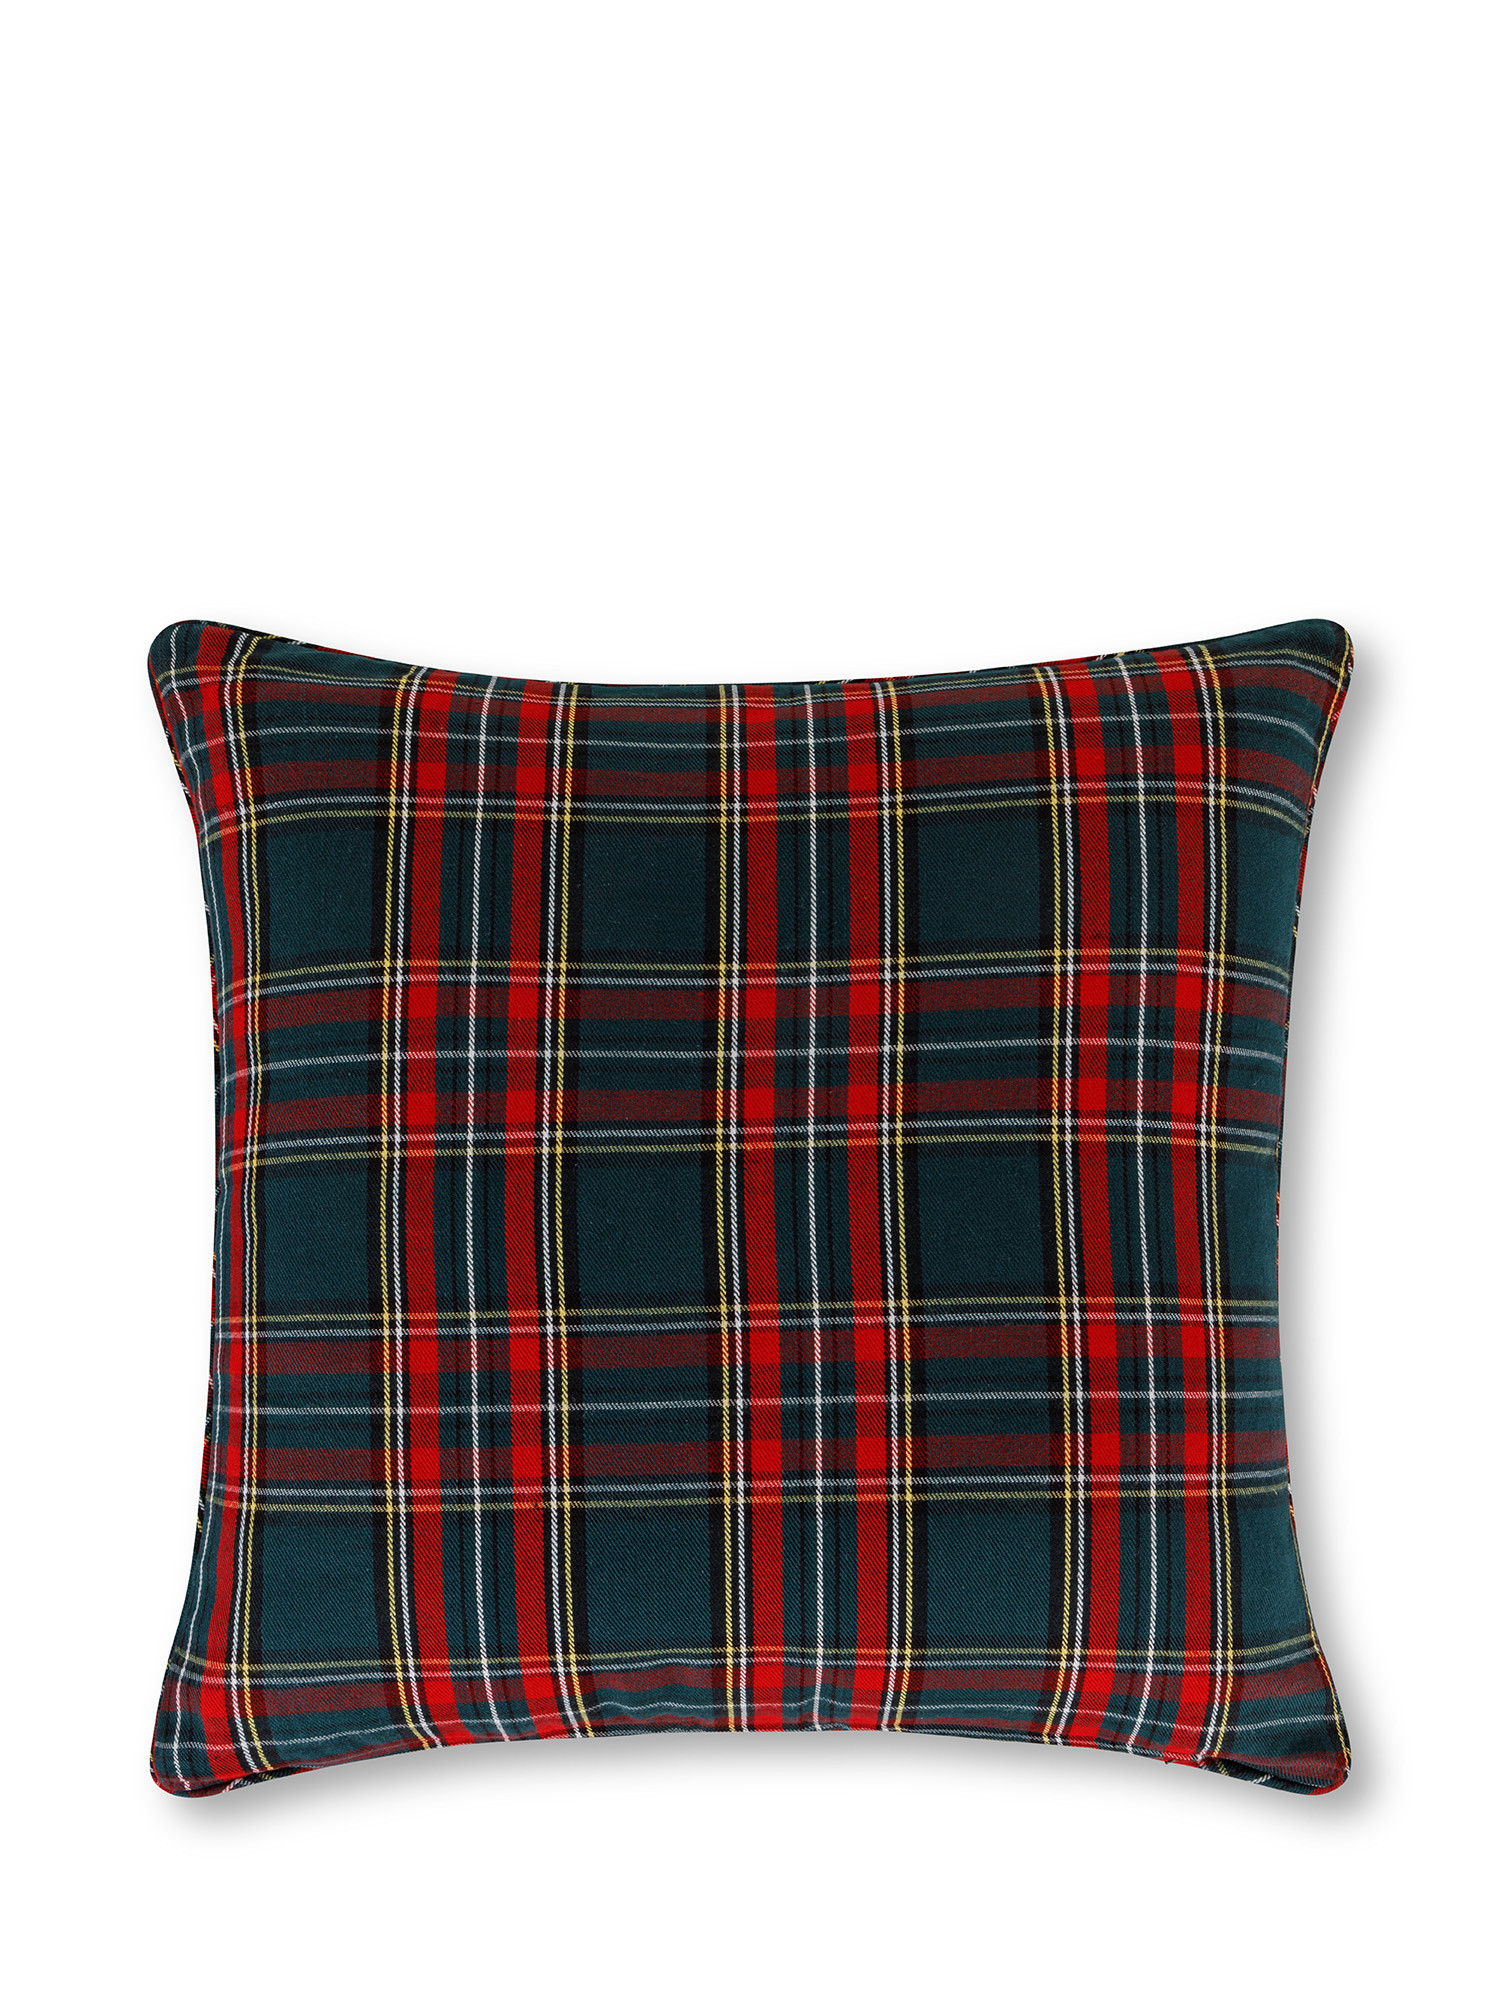 Tartan cushion 45x45 cm, Green, large image number 1